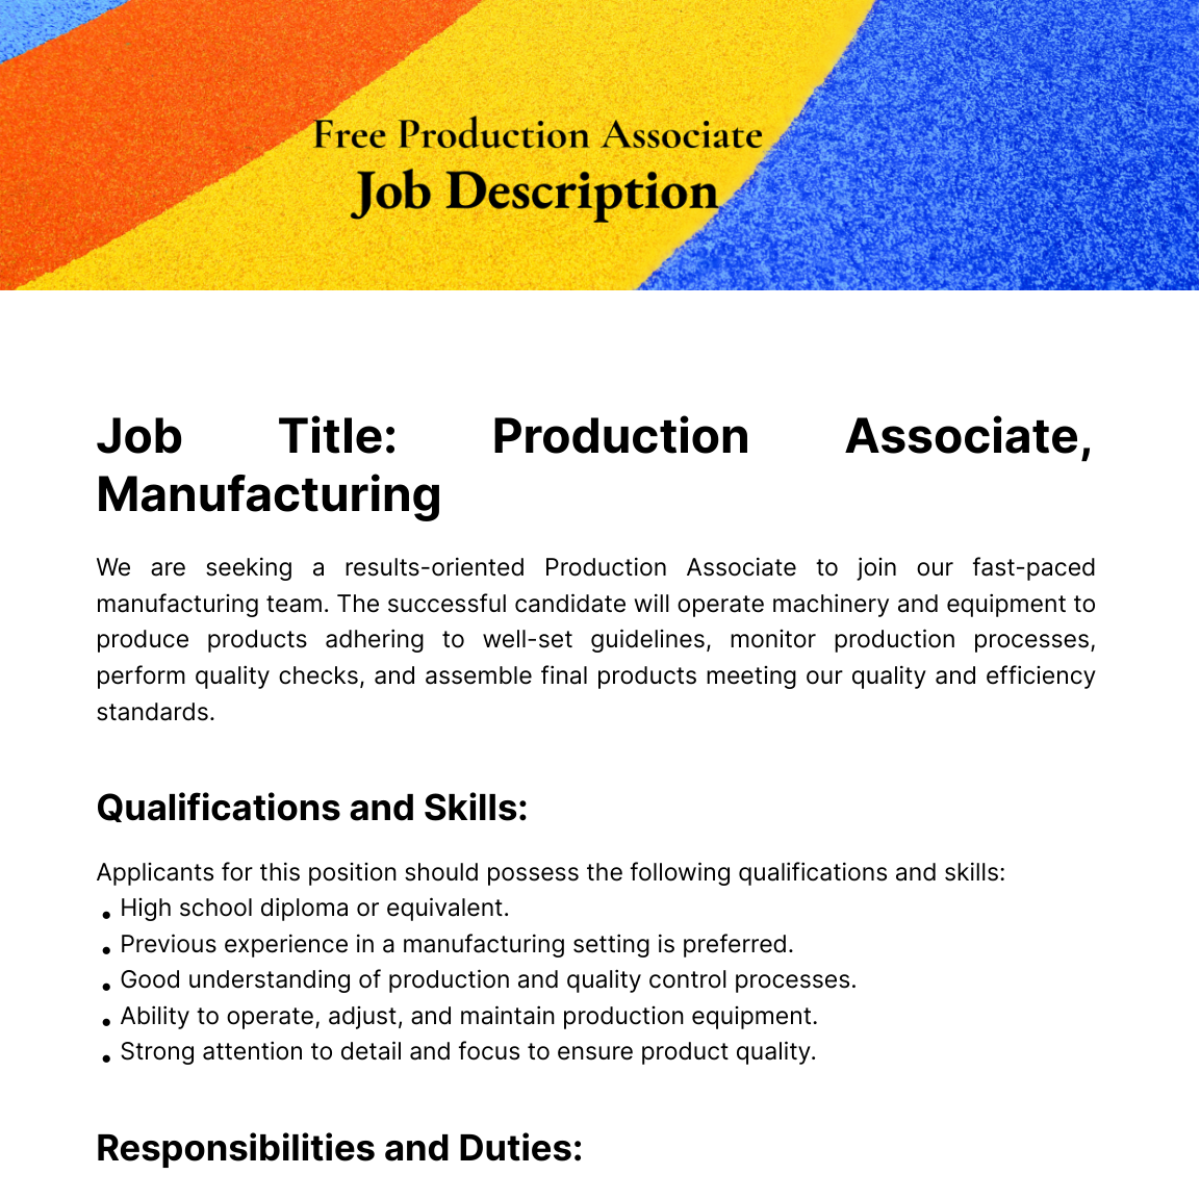 Free Production Associate Job Description Template